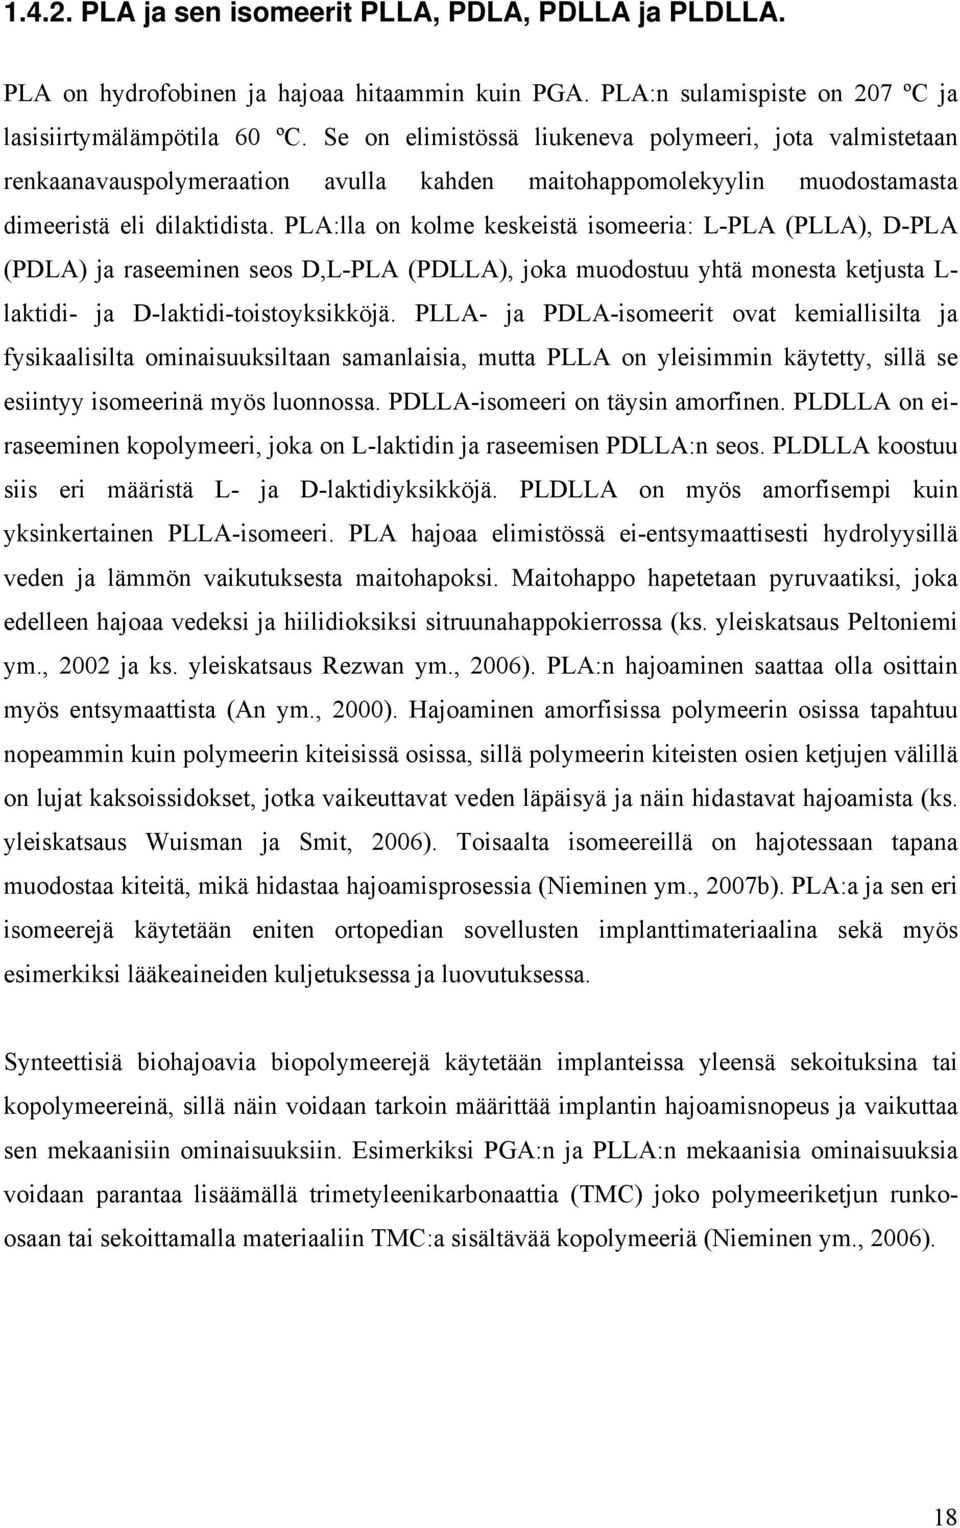 PLA:lla on kolme keskeistä isomeeria: L-PLA (PLLA), D-PLA (PDLA) ja raseeminen seos D,L-PLA (PDLLA), joka muodostuu yhtä monesta ketjusta L- laktidi- ja D-laktidi-toistoyksikköjä.